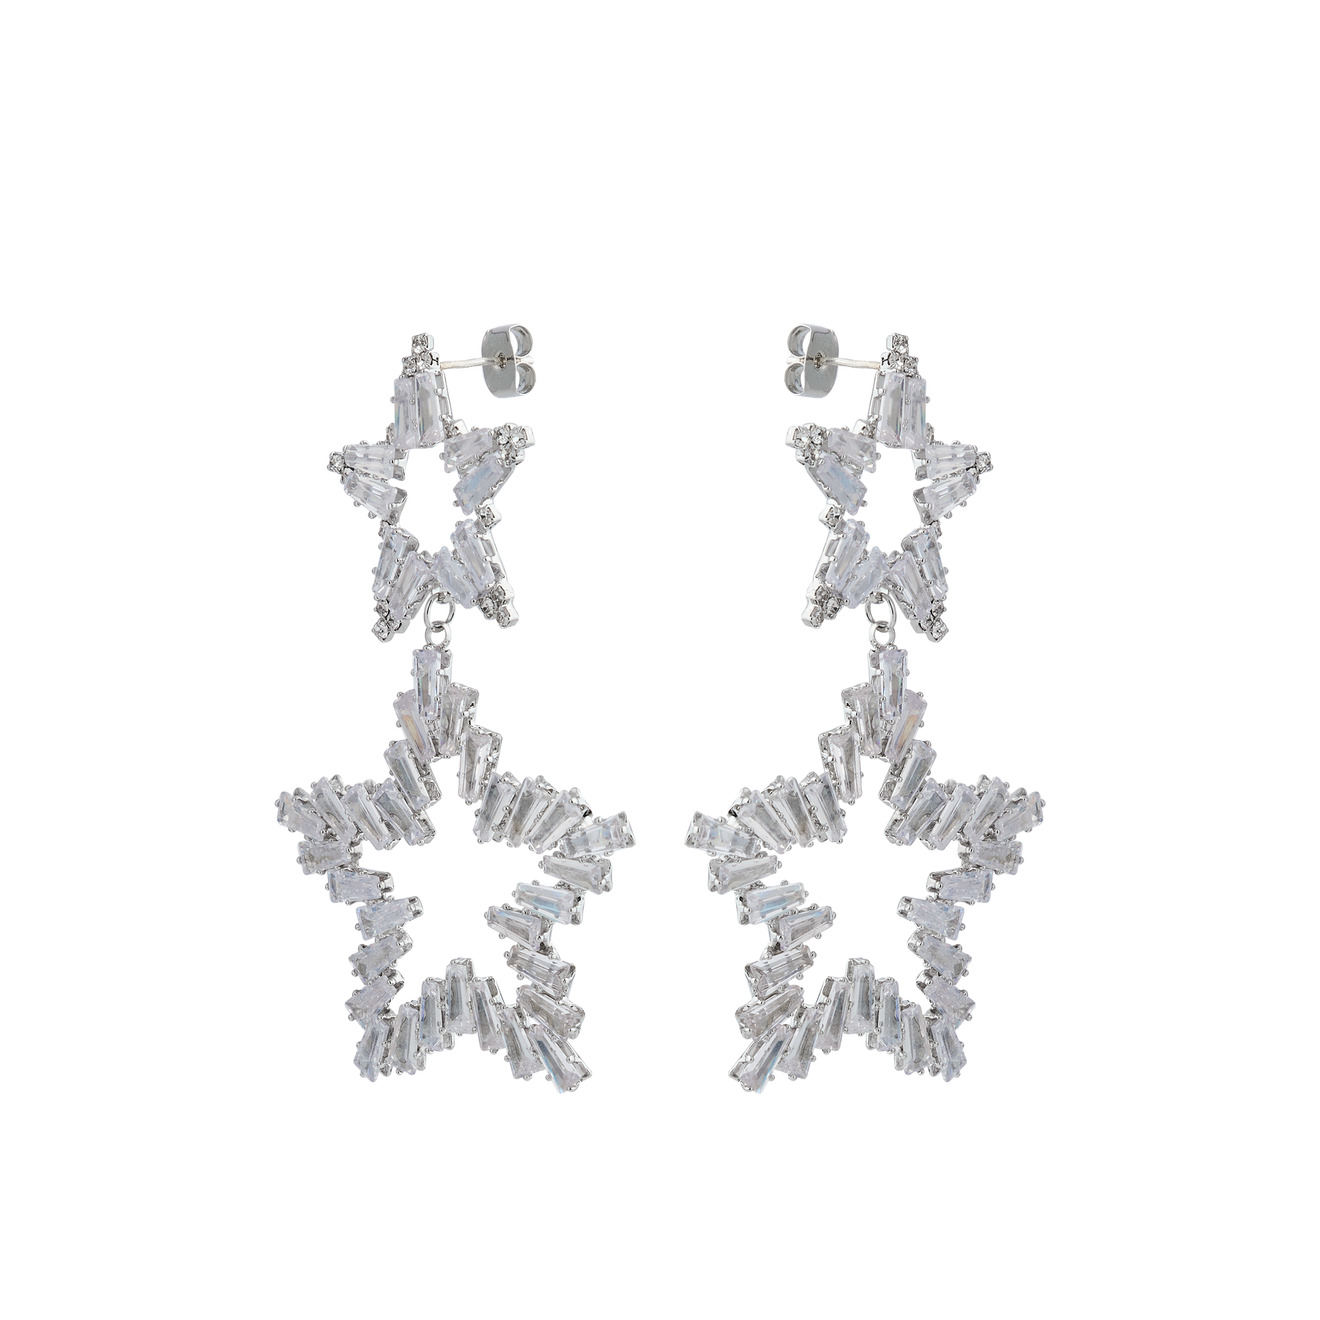 Herald Percy Серебристые серьги из двух звезд с кристаллами herald percy серебристые полукруглые серьги с дорожками из белых кристаллов